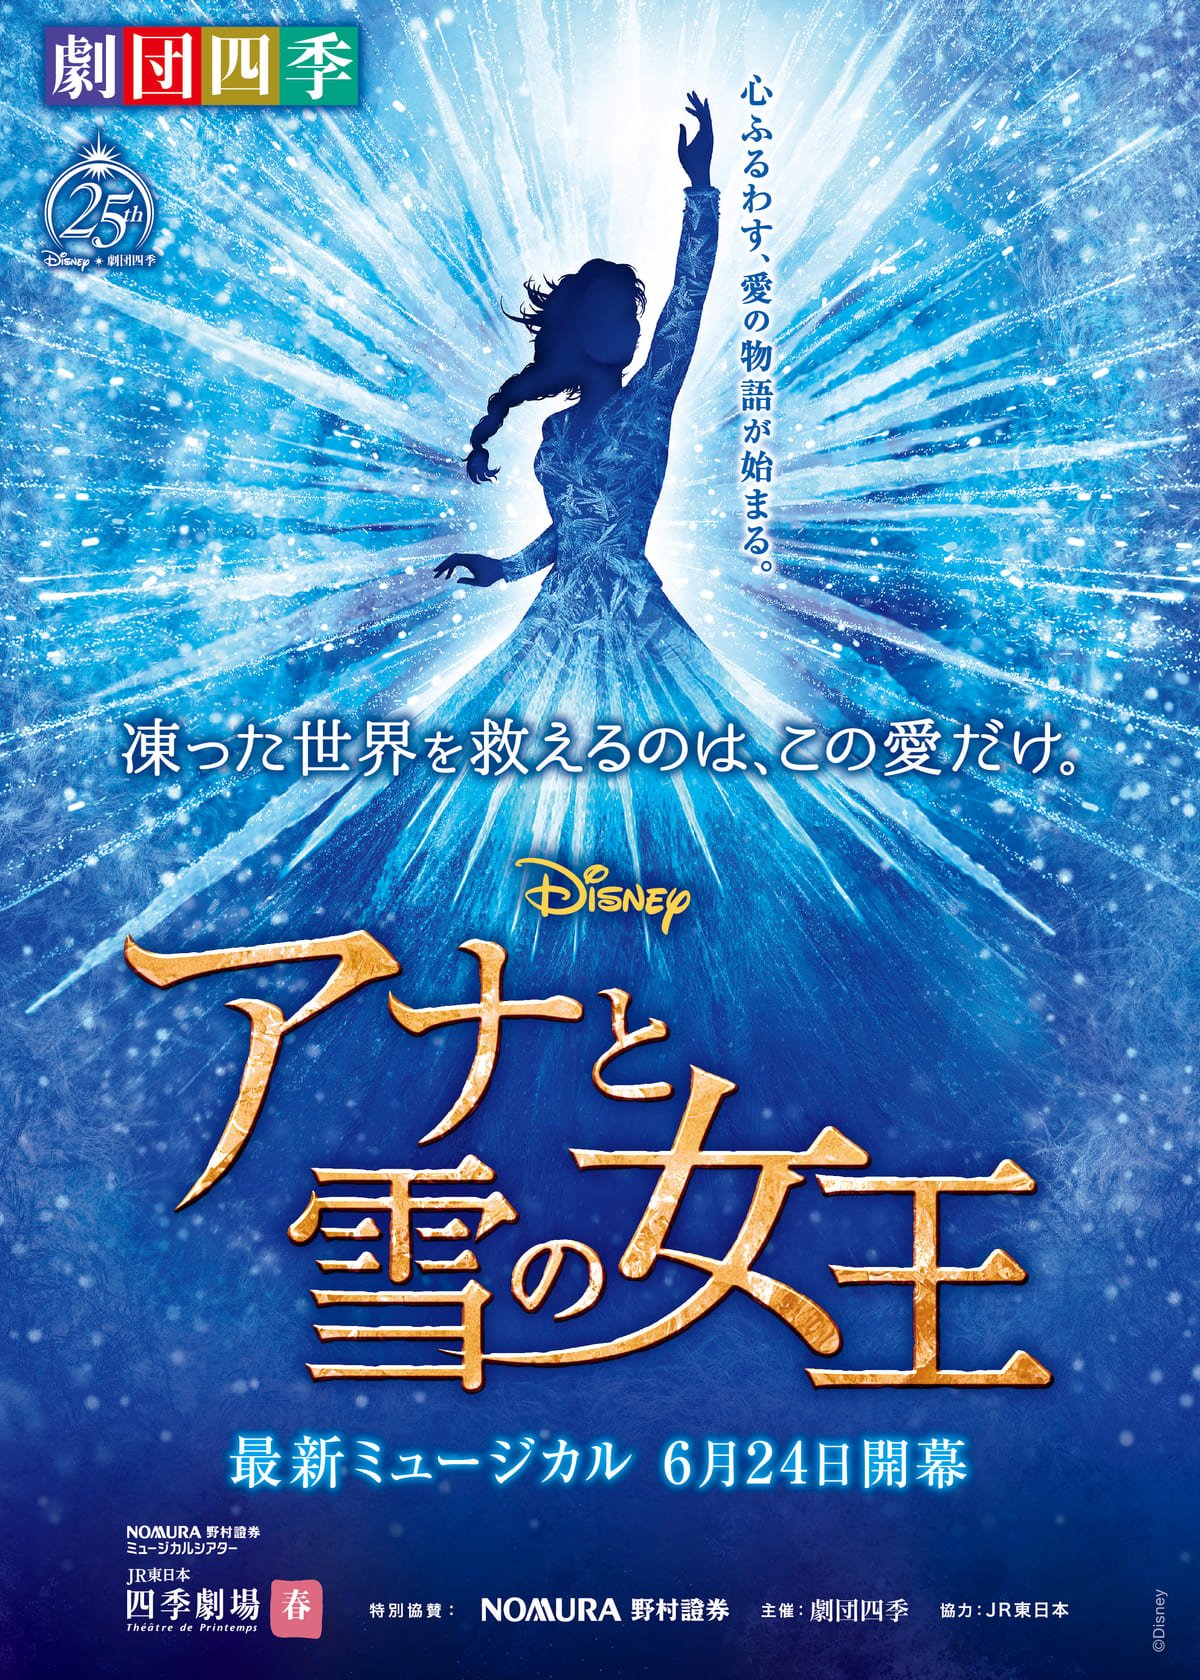 エルサの魔法と氷の世界が舞台に登場 劇団四季ディズニーミュージカル アナと雪の女王 ニコニコニュース